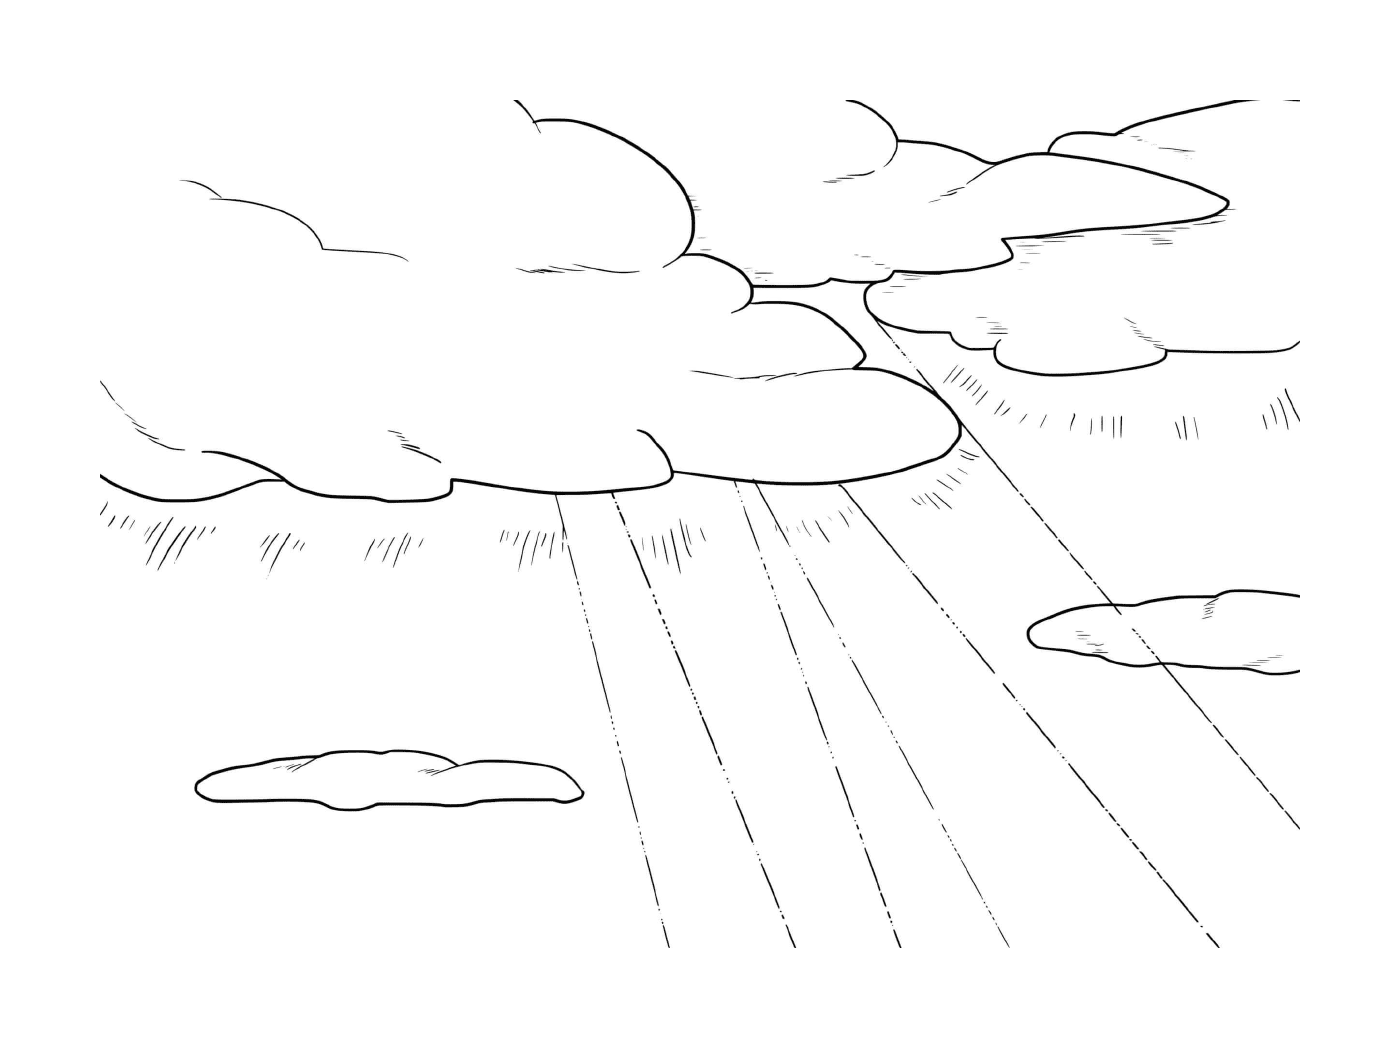  Transfiguración, línea y cielo con nubes 